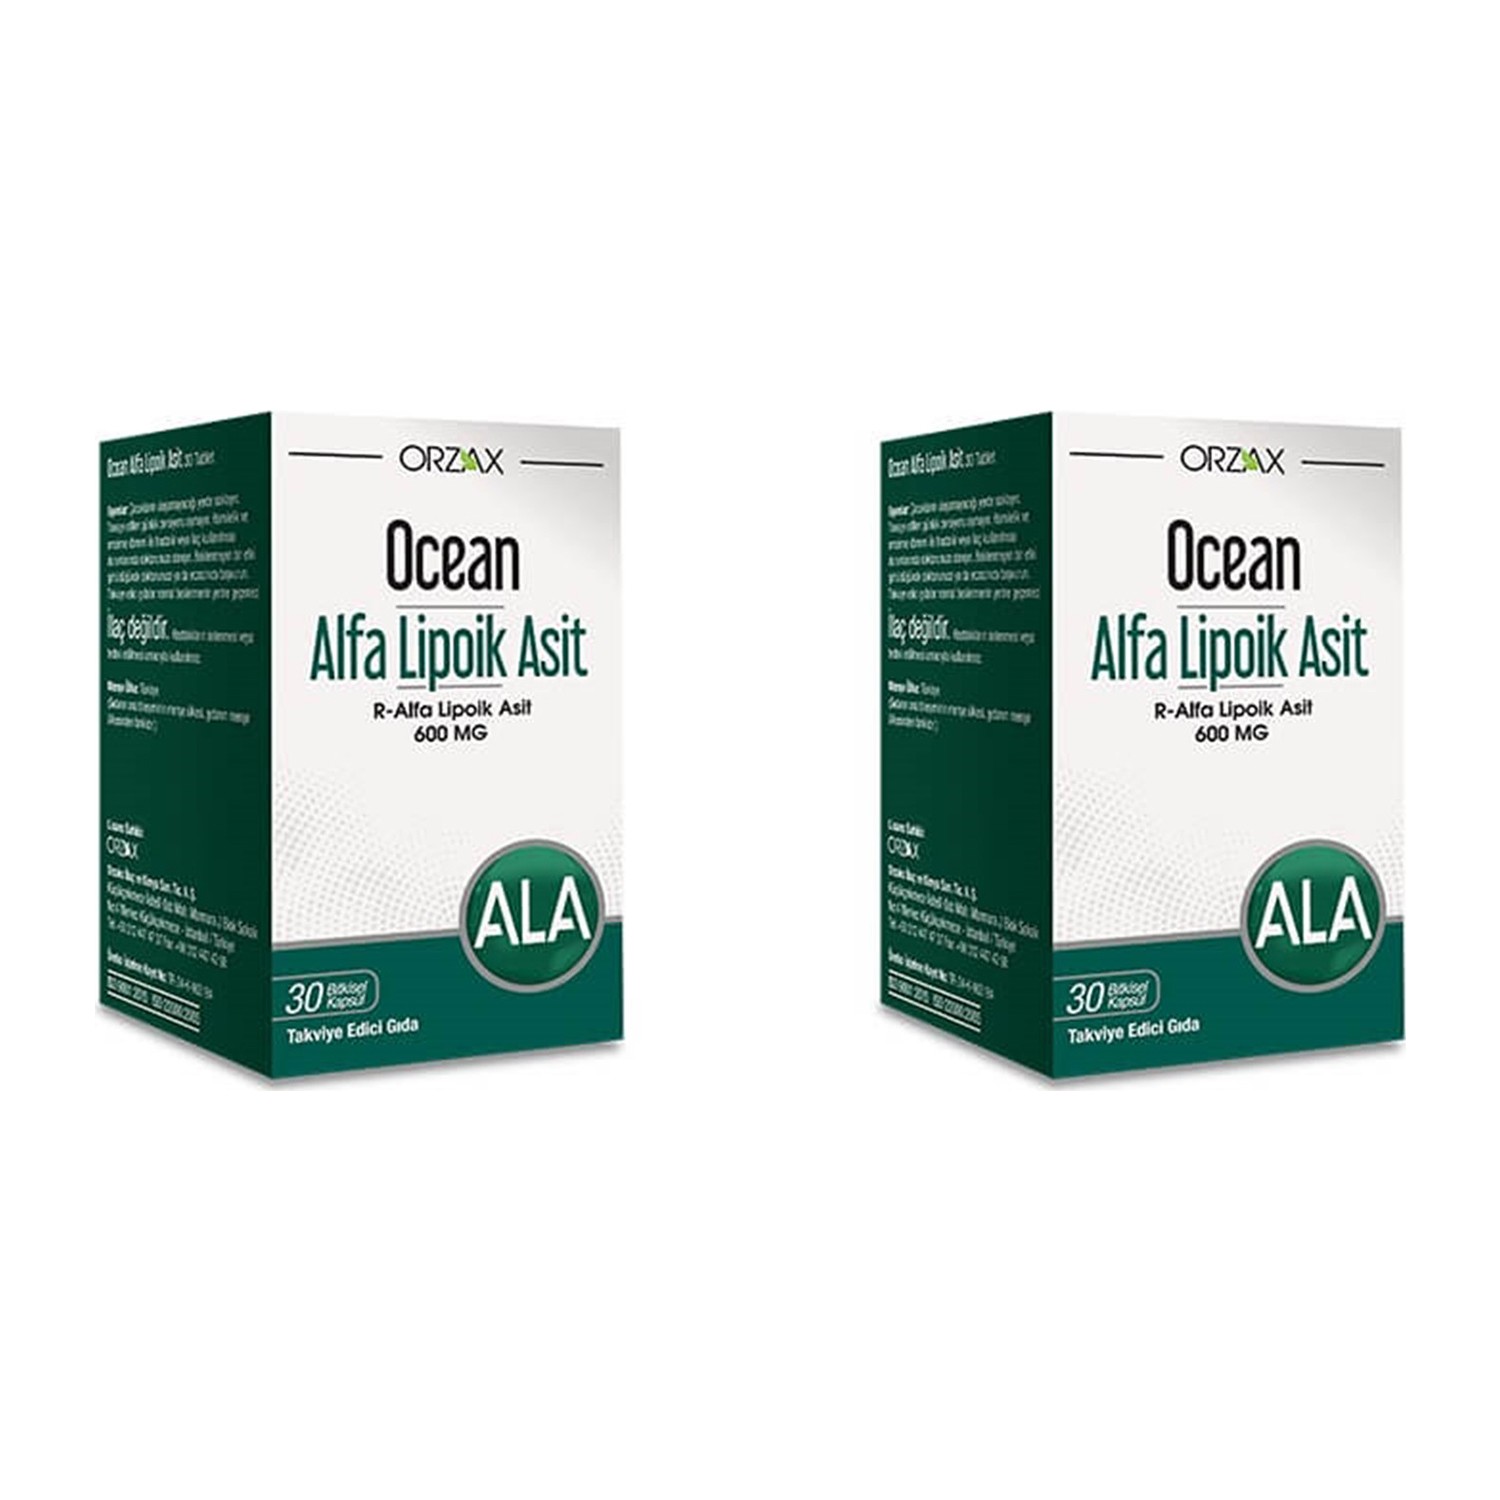 Альфа-липоевая кислота Orzax 600 мг, 2 упаковки по 30 капсул